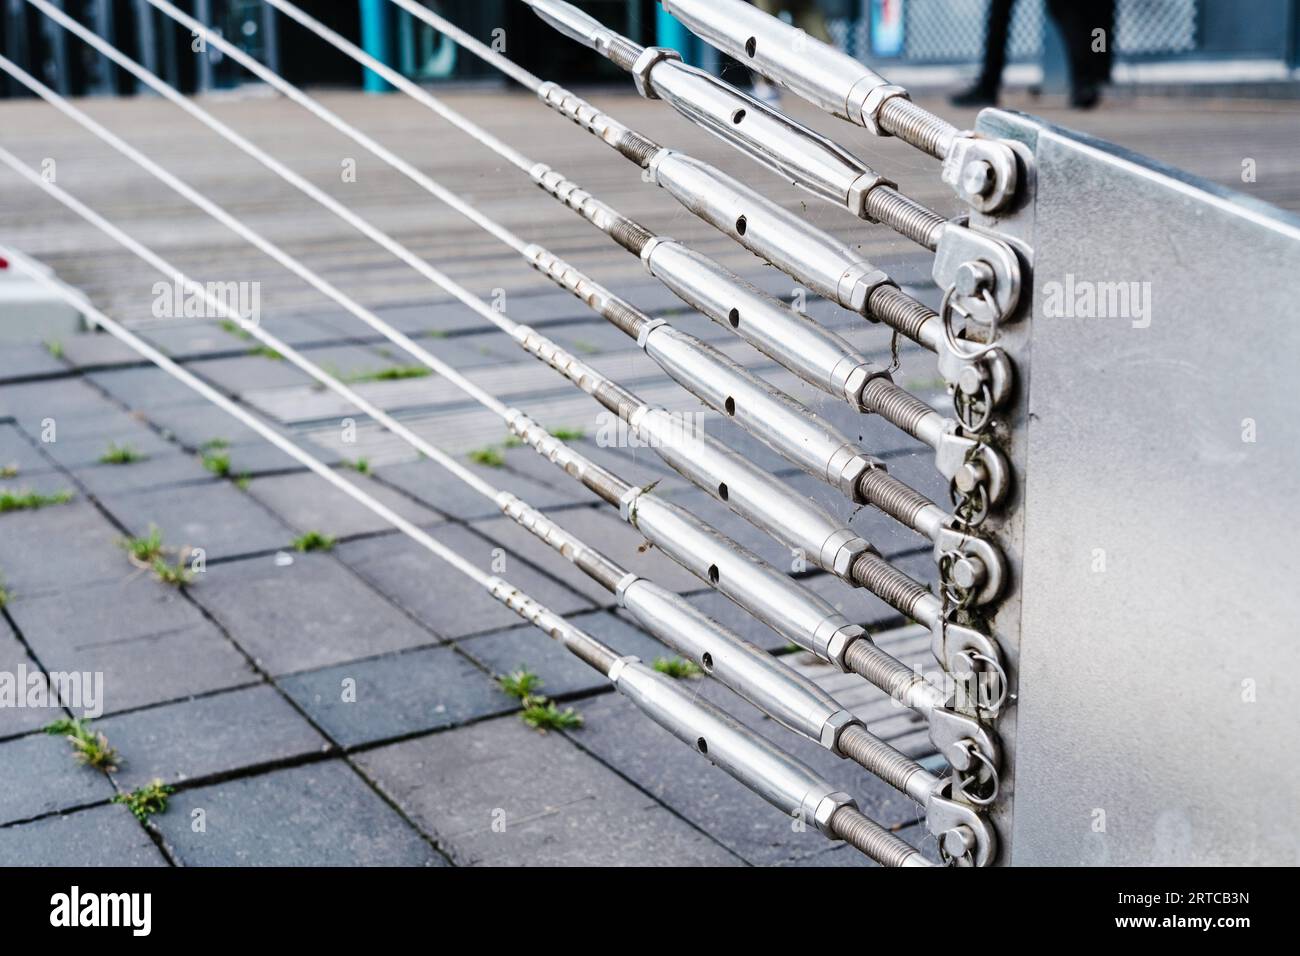 Stahlstreben, die an einer in den Boden geschobenen Stütze befestigt sind, halten die Stahlseile einer Brücke. Stockfoto